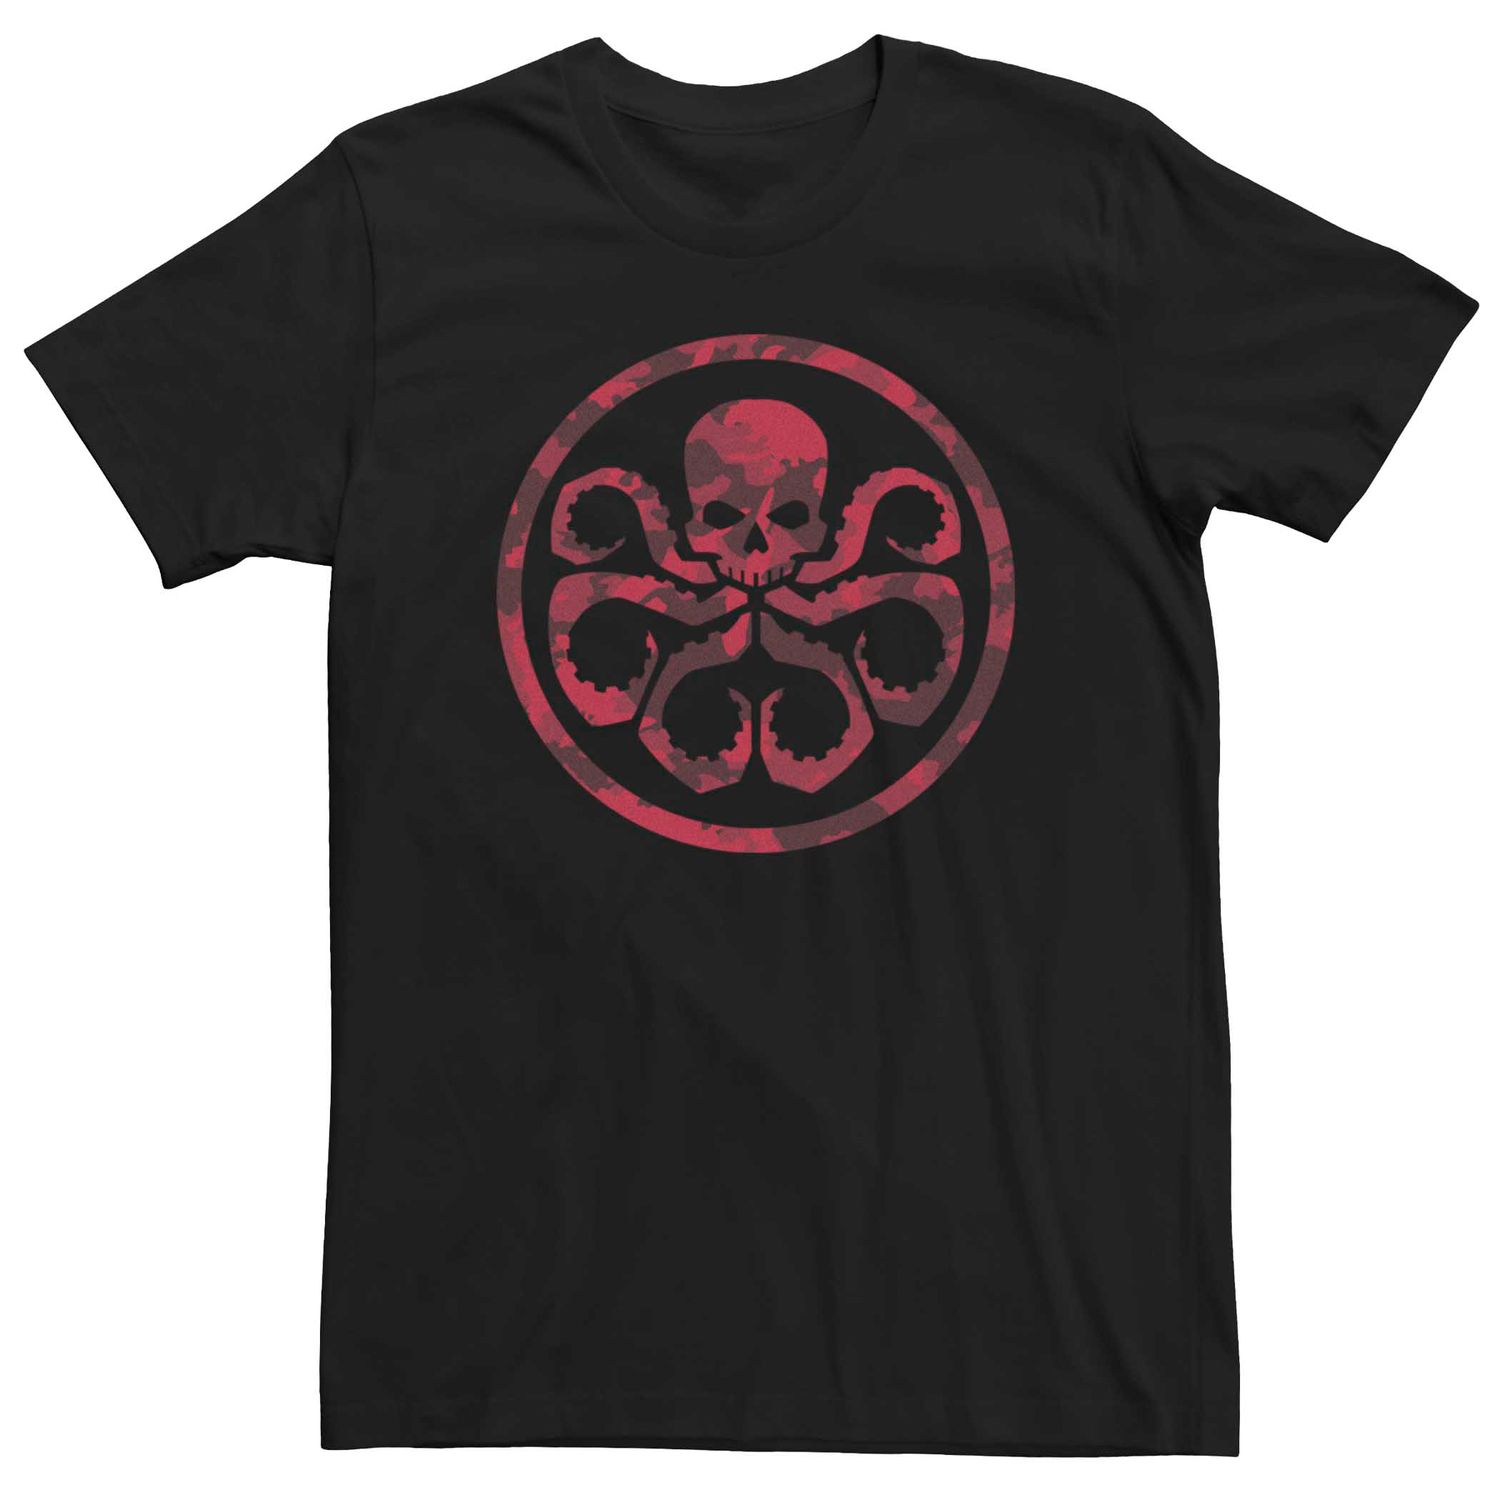 Мужская камуфляжная футболка с символом Hydra Marvel